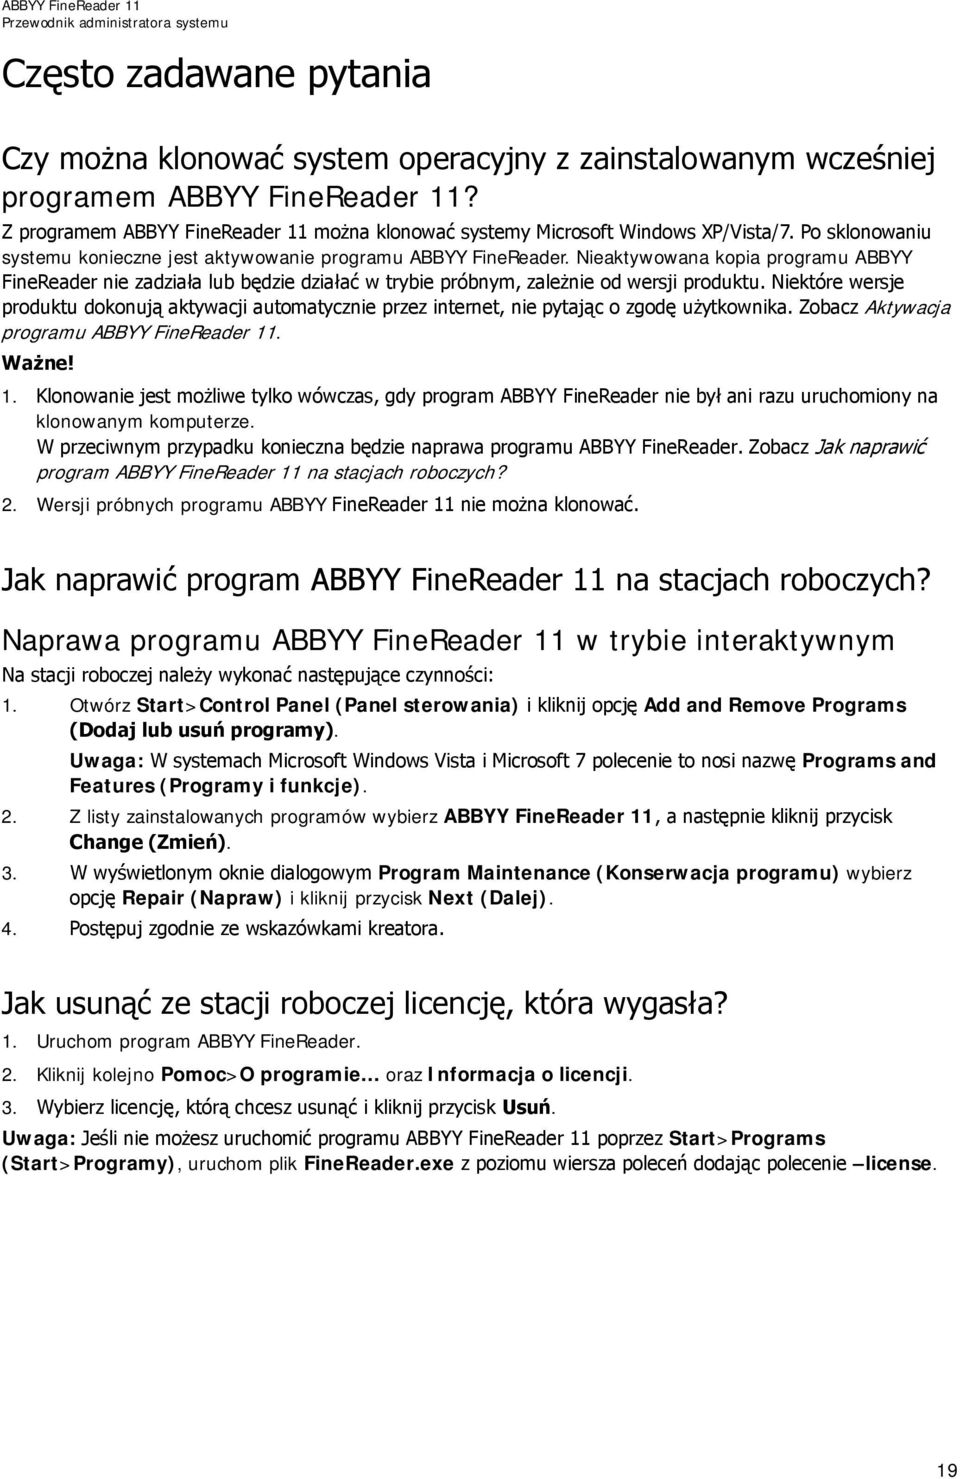 Nieaktywowana kopia programu ABBYY FineReader nie zadziała lub będzie działać w trybie próbnym, zależnie od wersji produktu.